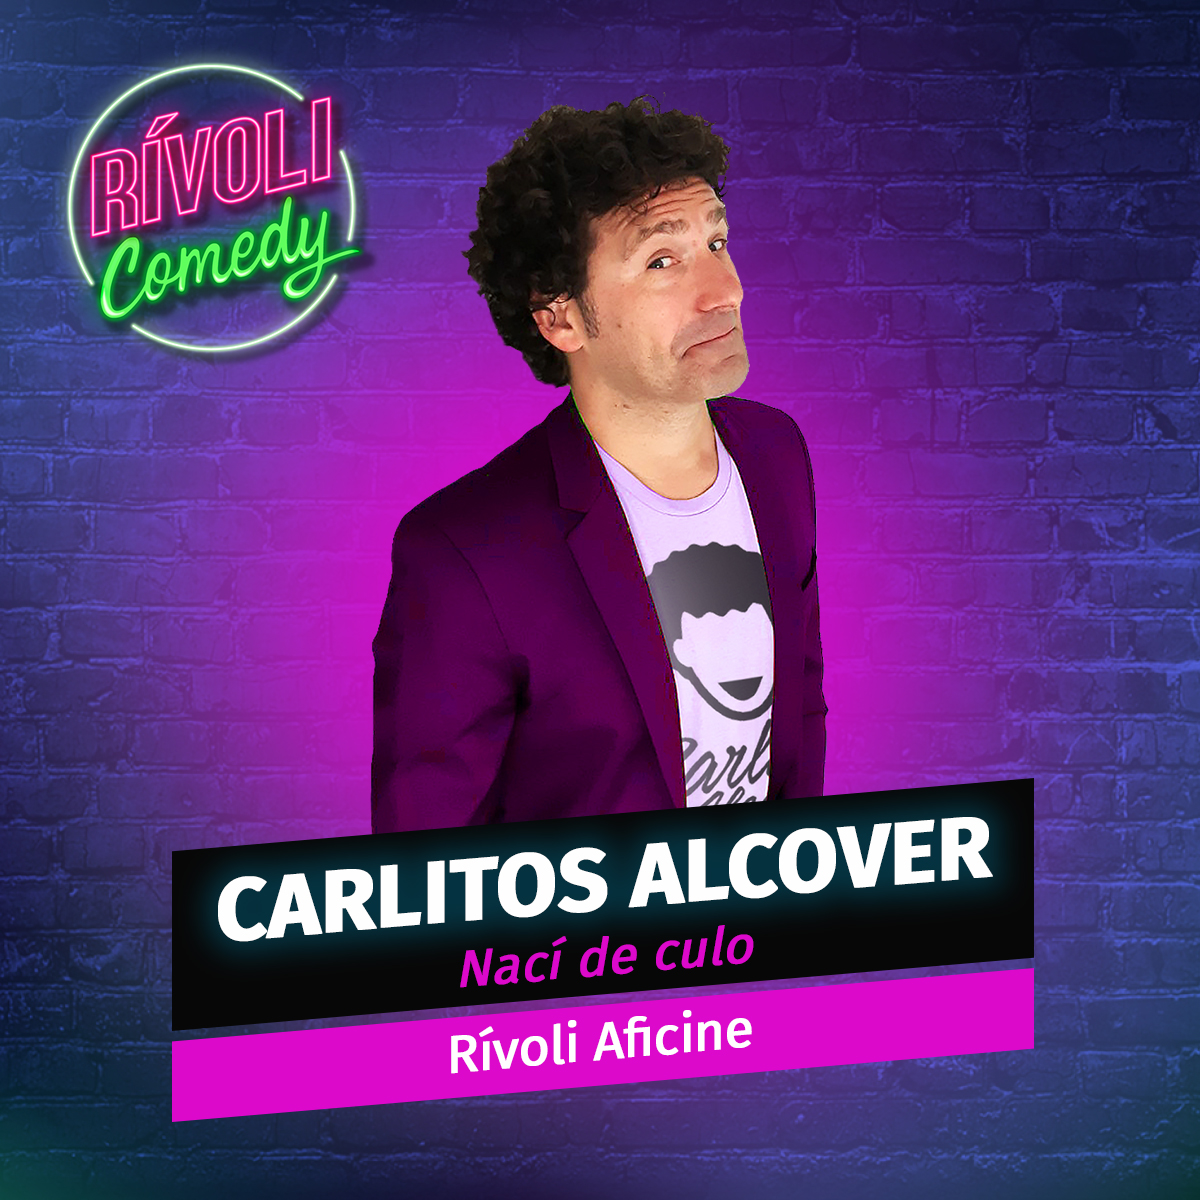 Carlitos Alcover | Nací de culo · Palma de Mallorca (Rívoli Comedy)